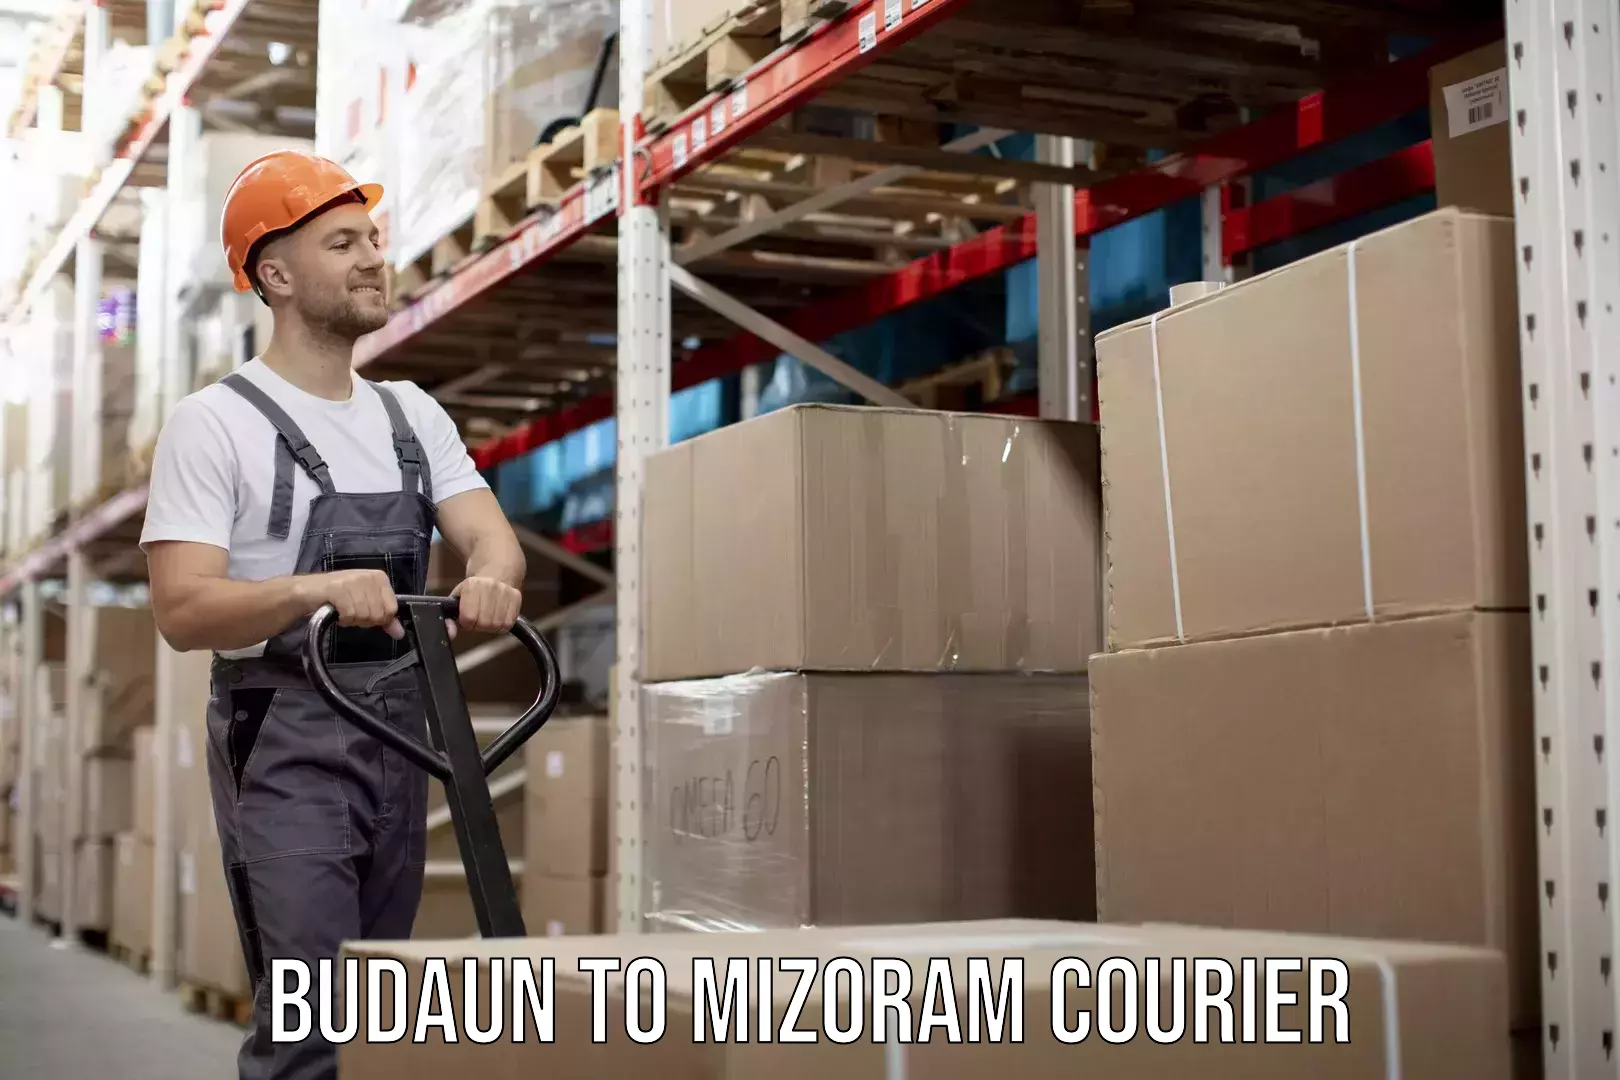 Local courier options Budaun to Mizoram